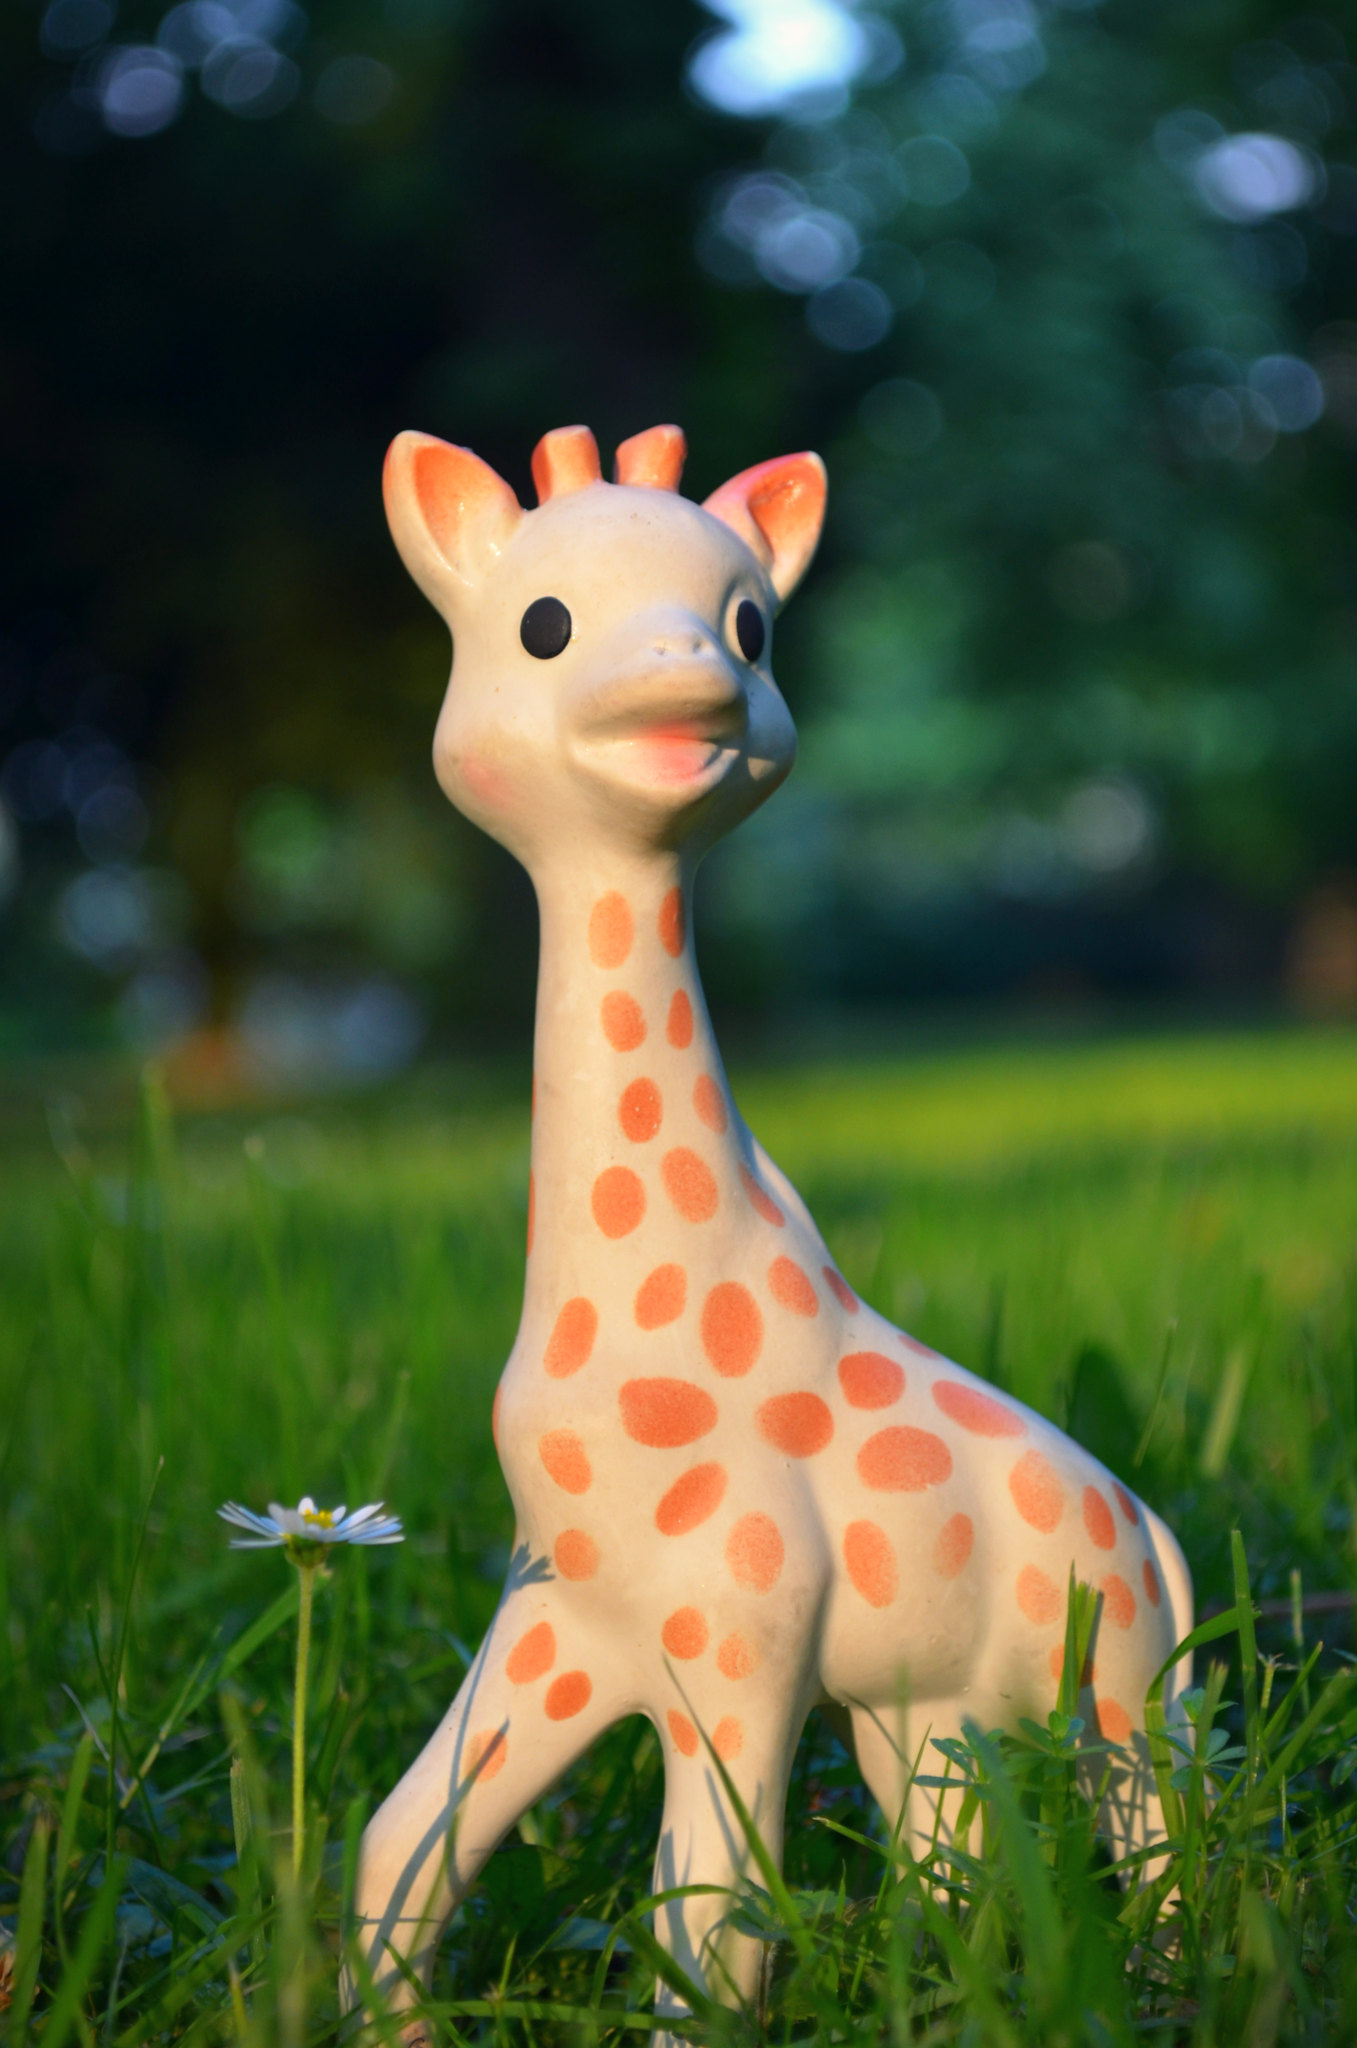 giraffe-toy-Flickr